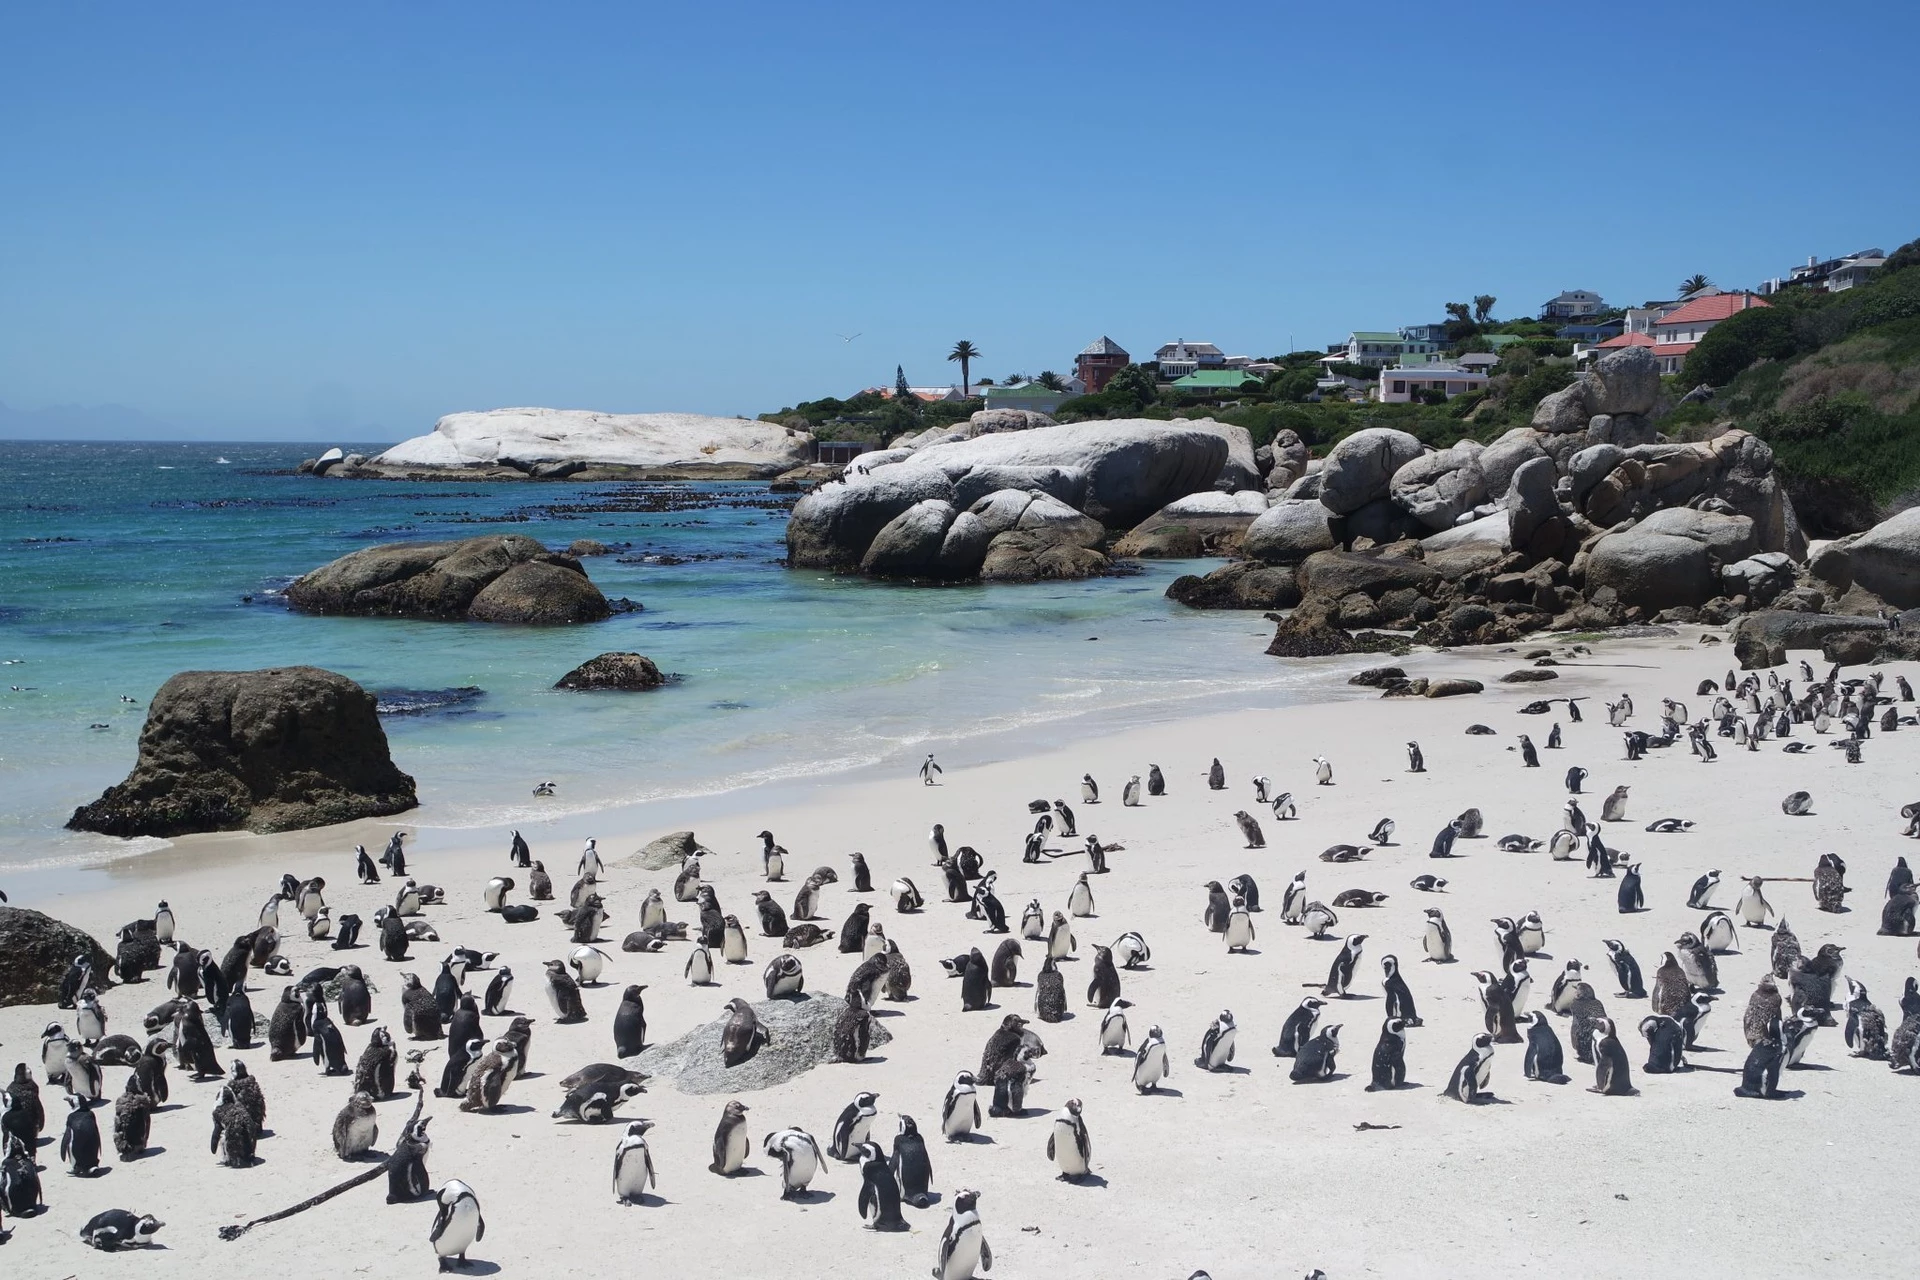 Bãi biển chim cánh cụt (Nam Phi): Nằm cạnh thị trấn Simon, bãi biển Boulders có lẽ là nơi đông đúc nhất trong 7 địa danh được giới thiệu nhưng không phải du khách mà là chim cánh cụt. Hàng nghìn con chim cánh cụt châu Phi coi bãi biển này là "nhà", nơi chúng sống từ những năm 1980. Để tiếp cận bãi biển, du khách phải trả khoản phí dùng cho dự án bảo vệ sinh thái. Bạn có thể thỏa thích ngắm và chụp ảnh cùng những sinh vật ngộ nghĩnh đang đi lang thang, nô đùa trên bãi biển. Ảnh: Lamyerda.